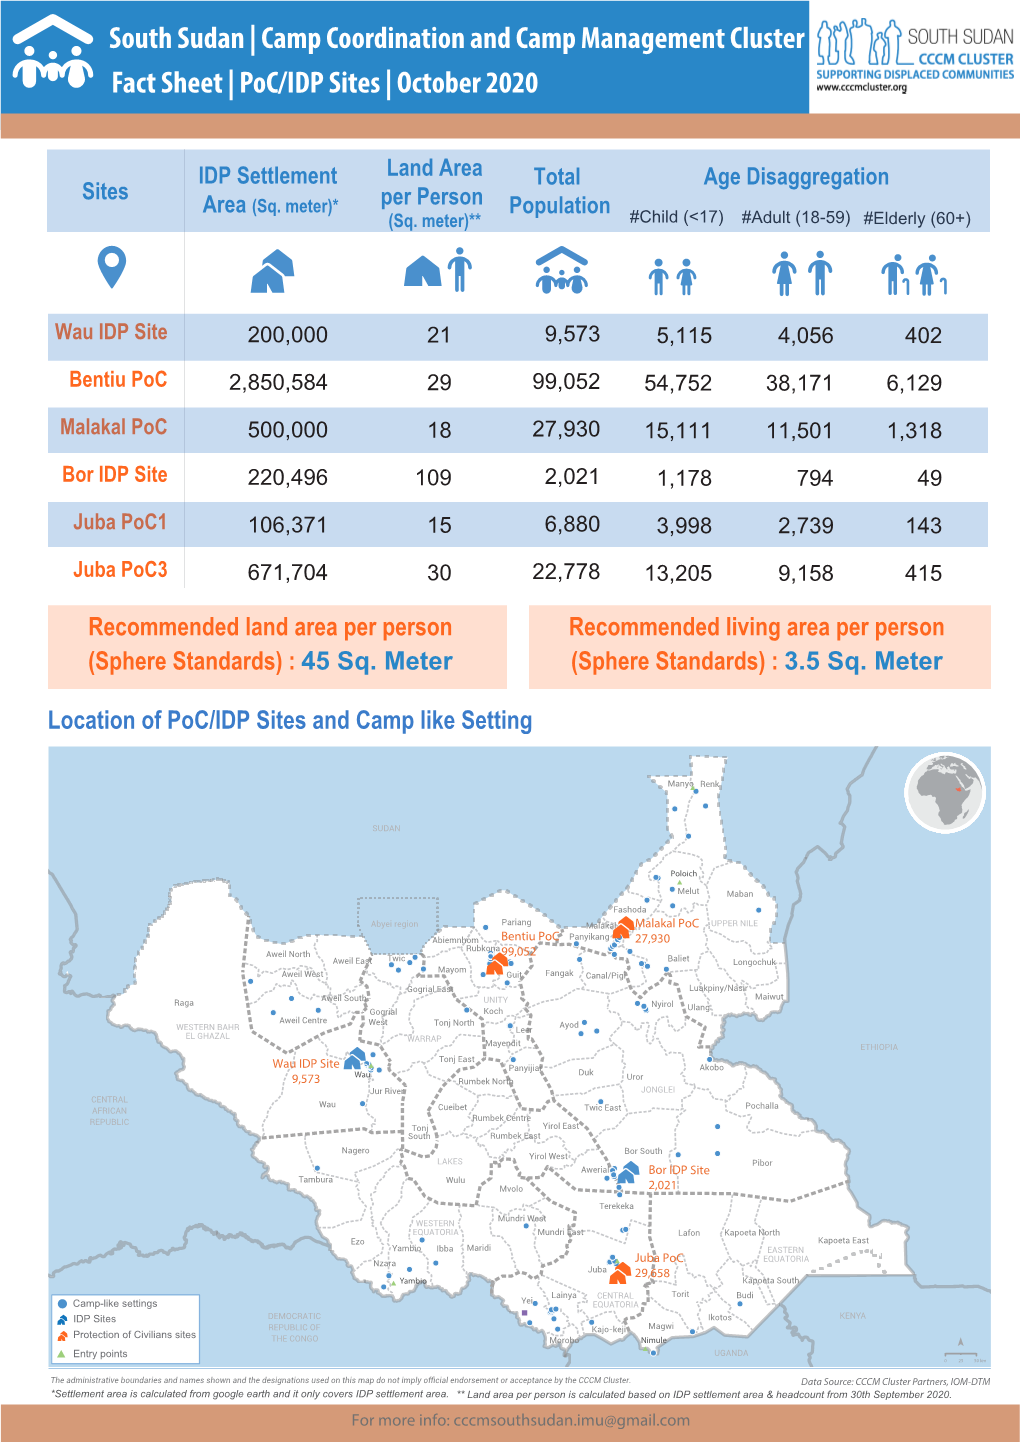 202001011 Poc IDP Sites Fact Sheet October 2020